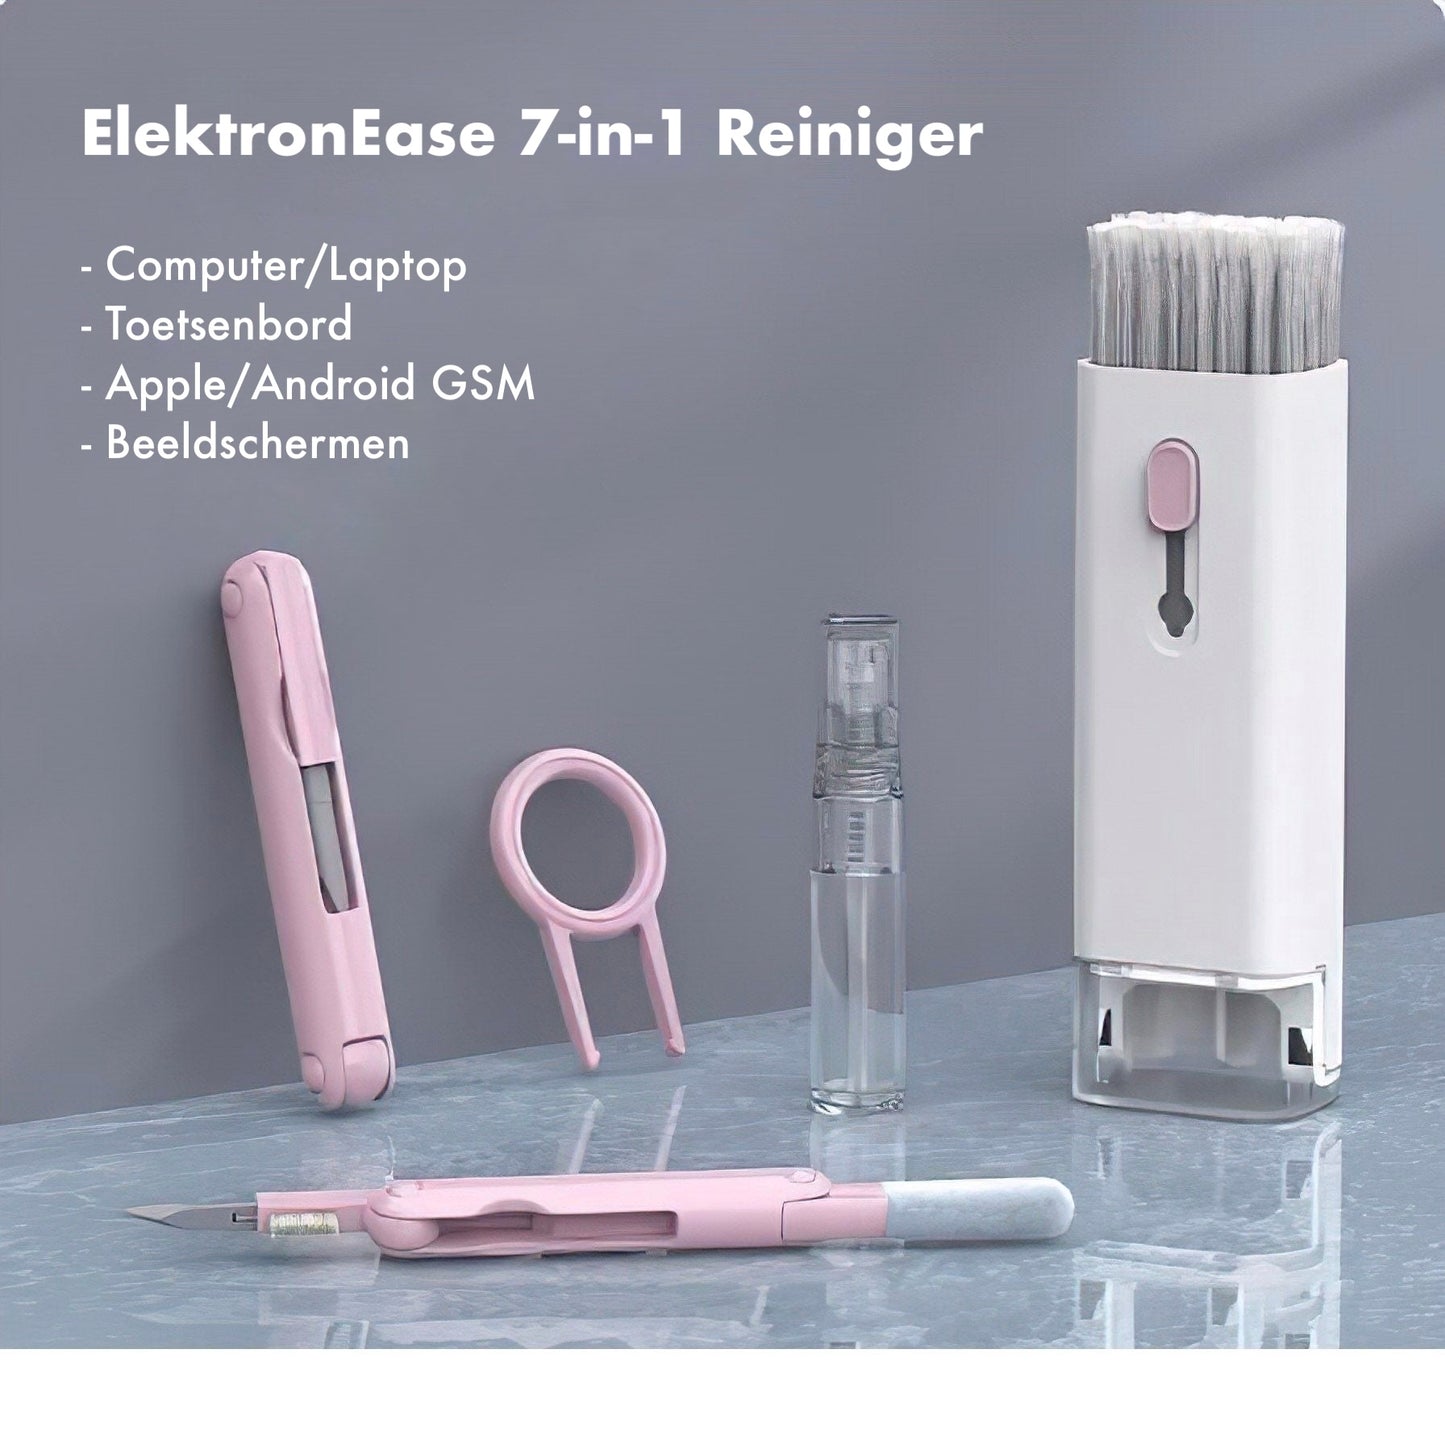 ElektronEase 7-in-1 Reiniger